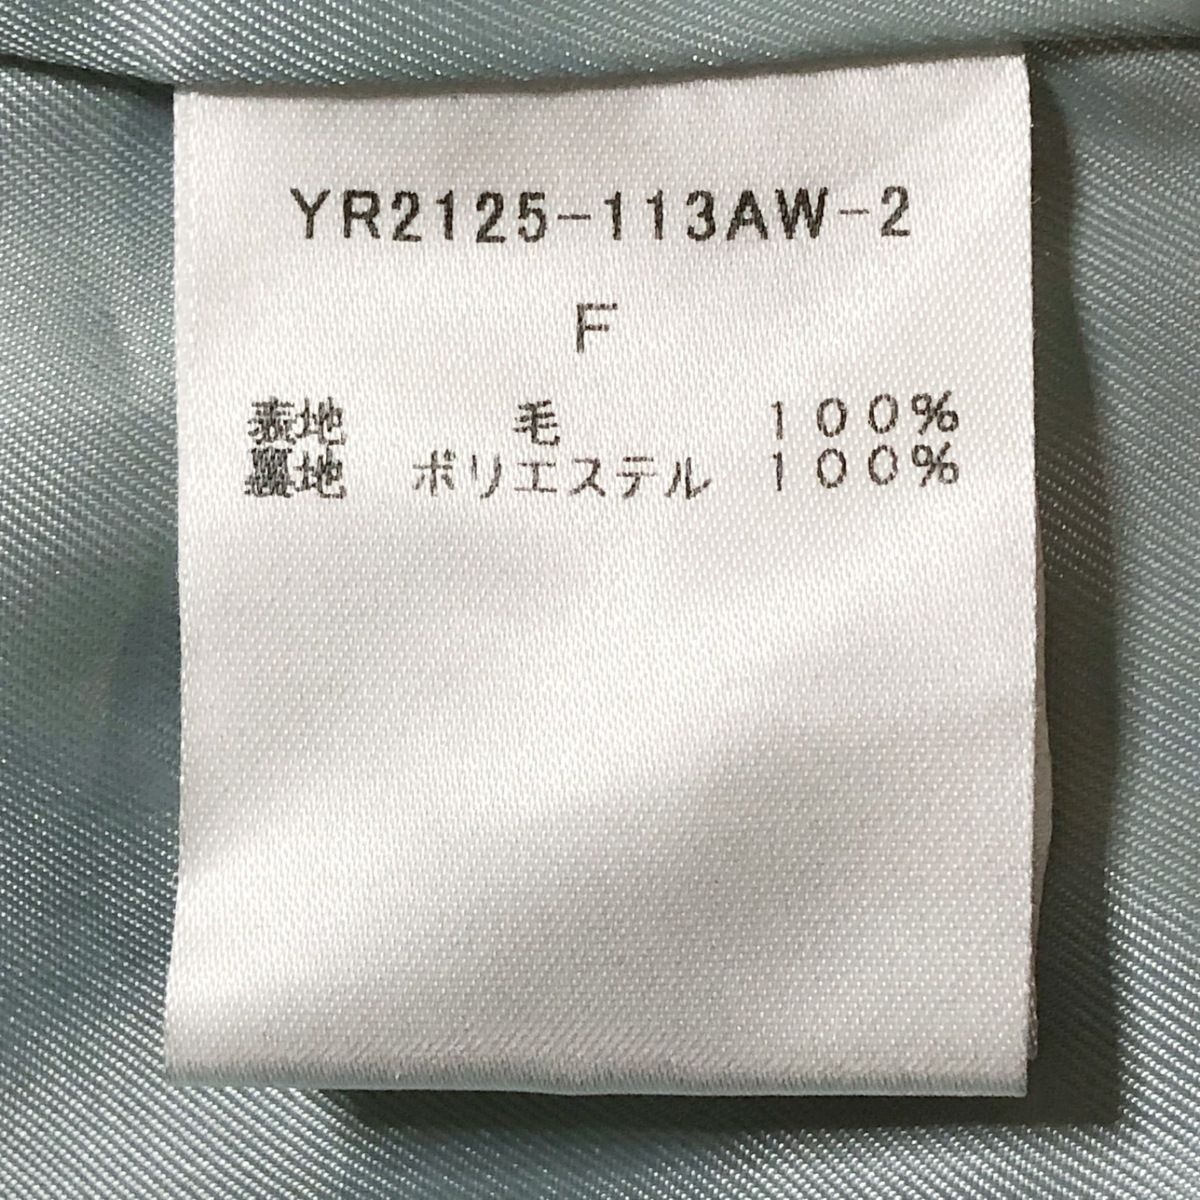 yori(ヨリ) コート サイズF レディース - 黒 長袖/冬 - メルカリ